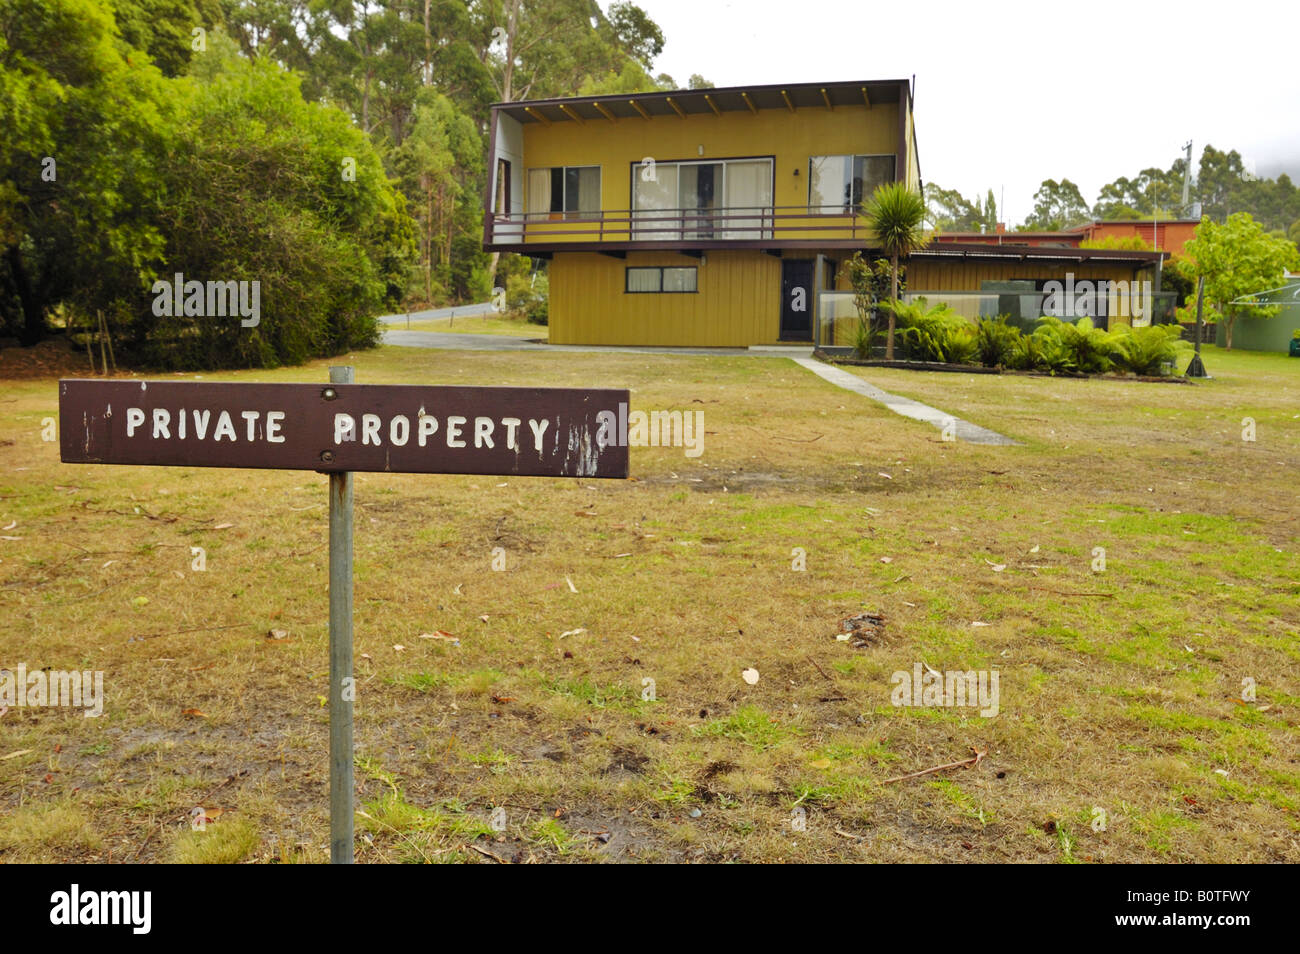 Eine australische Seite Strandhaus mit einem Privateigentum Schild Stockfoto